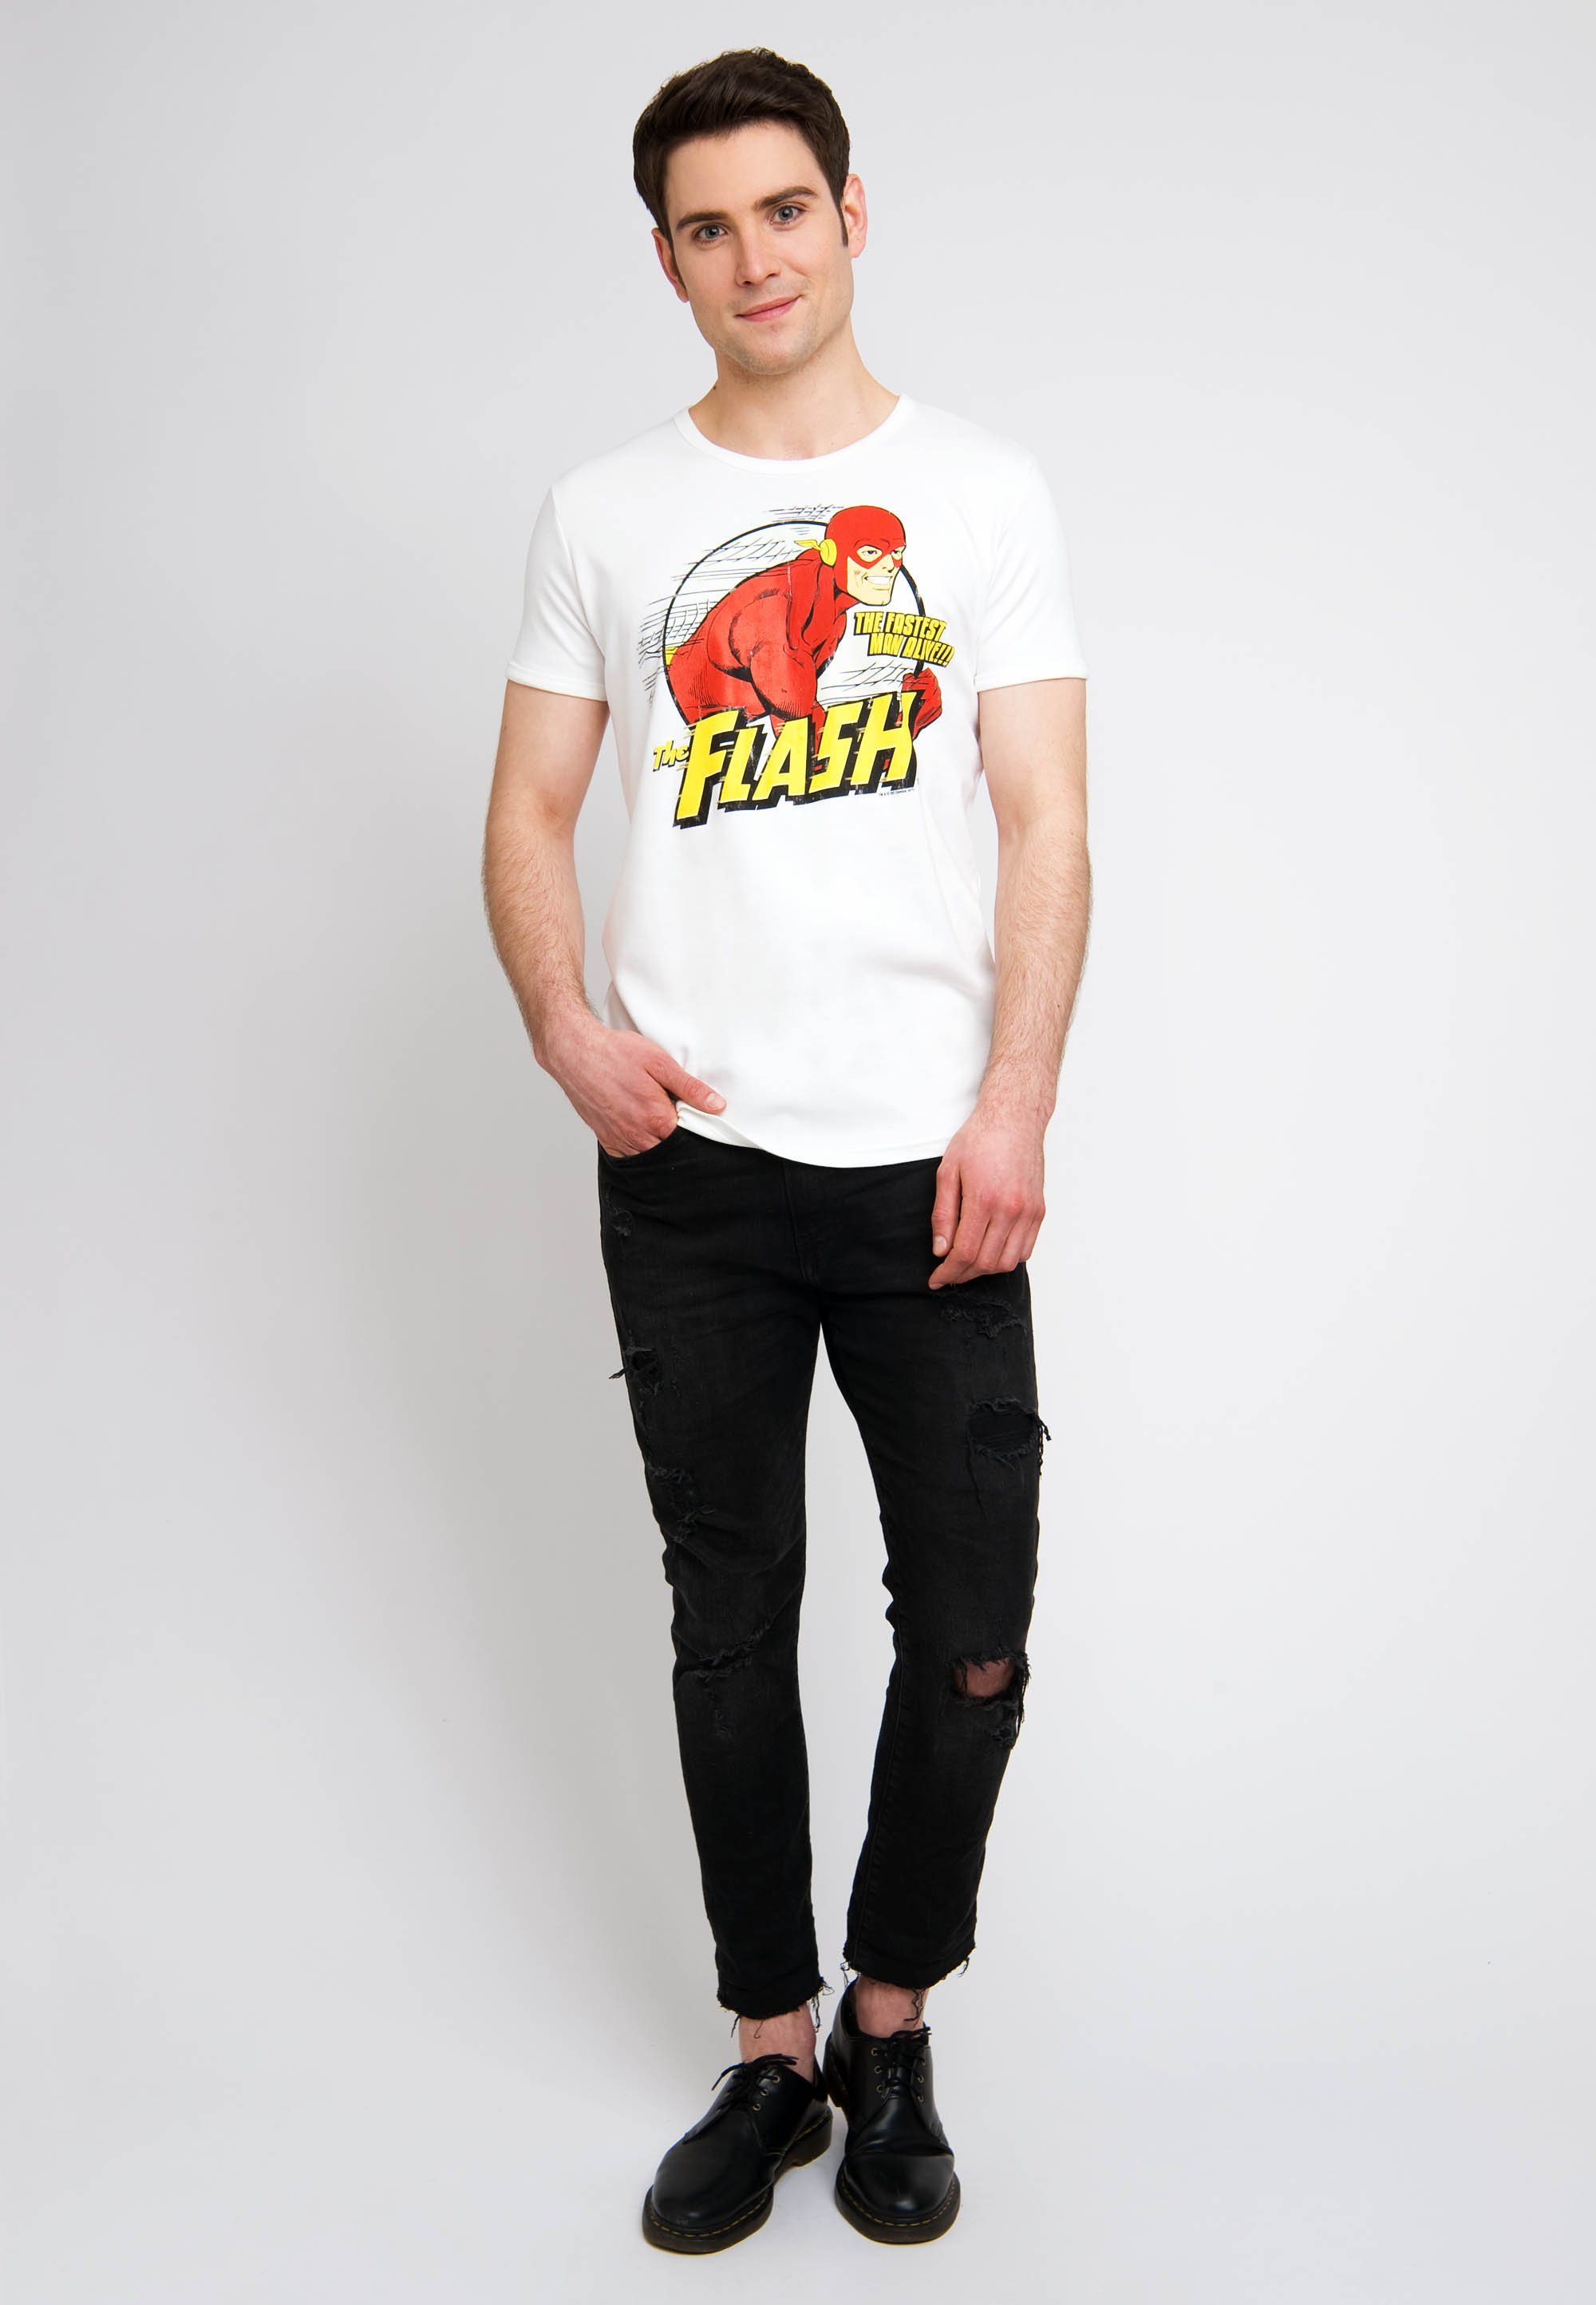 LOGOSHIRT T-Shirt The The Flash-Print altweiß Alive Fastest mit tollem Man